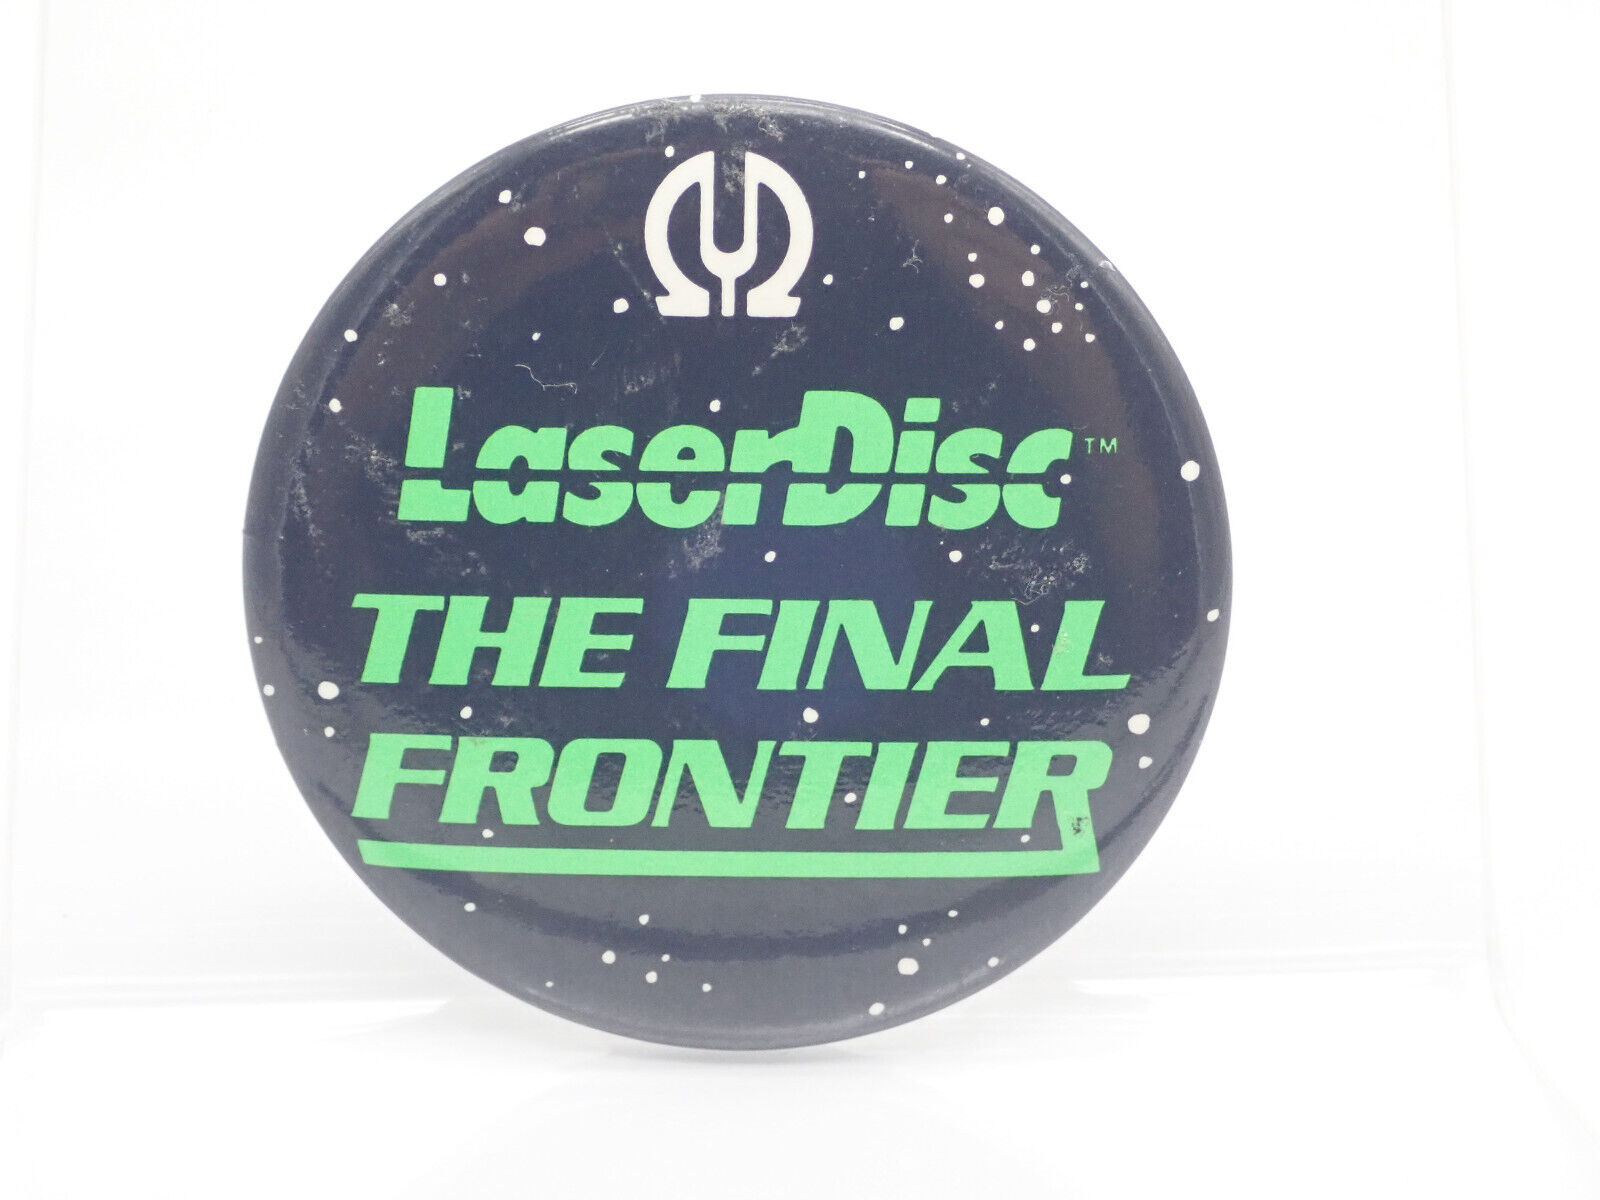 LaserDisc The Final Frontier Vintage Button